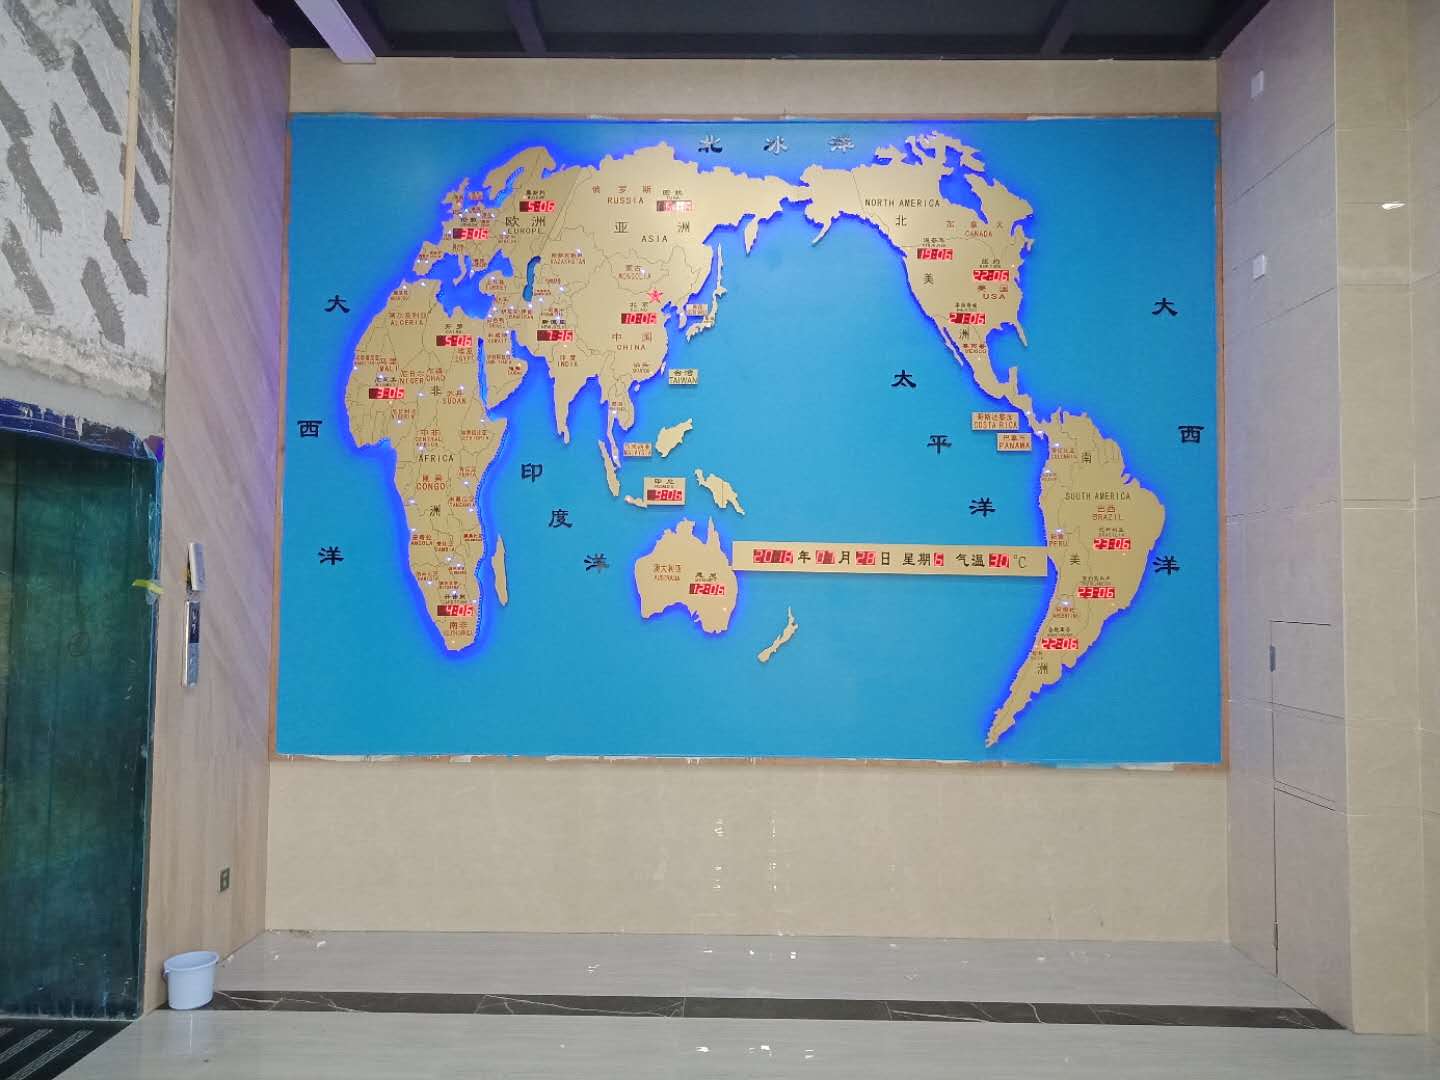 新款带自动夏令时的世界地图时间钟/大堂墙面装饰钟/立体地图墙面时钟